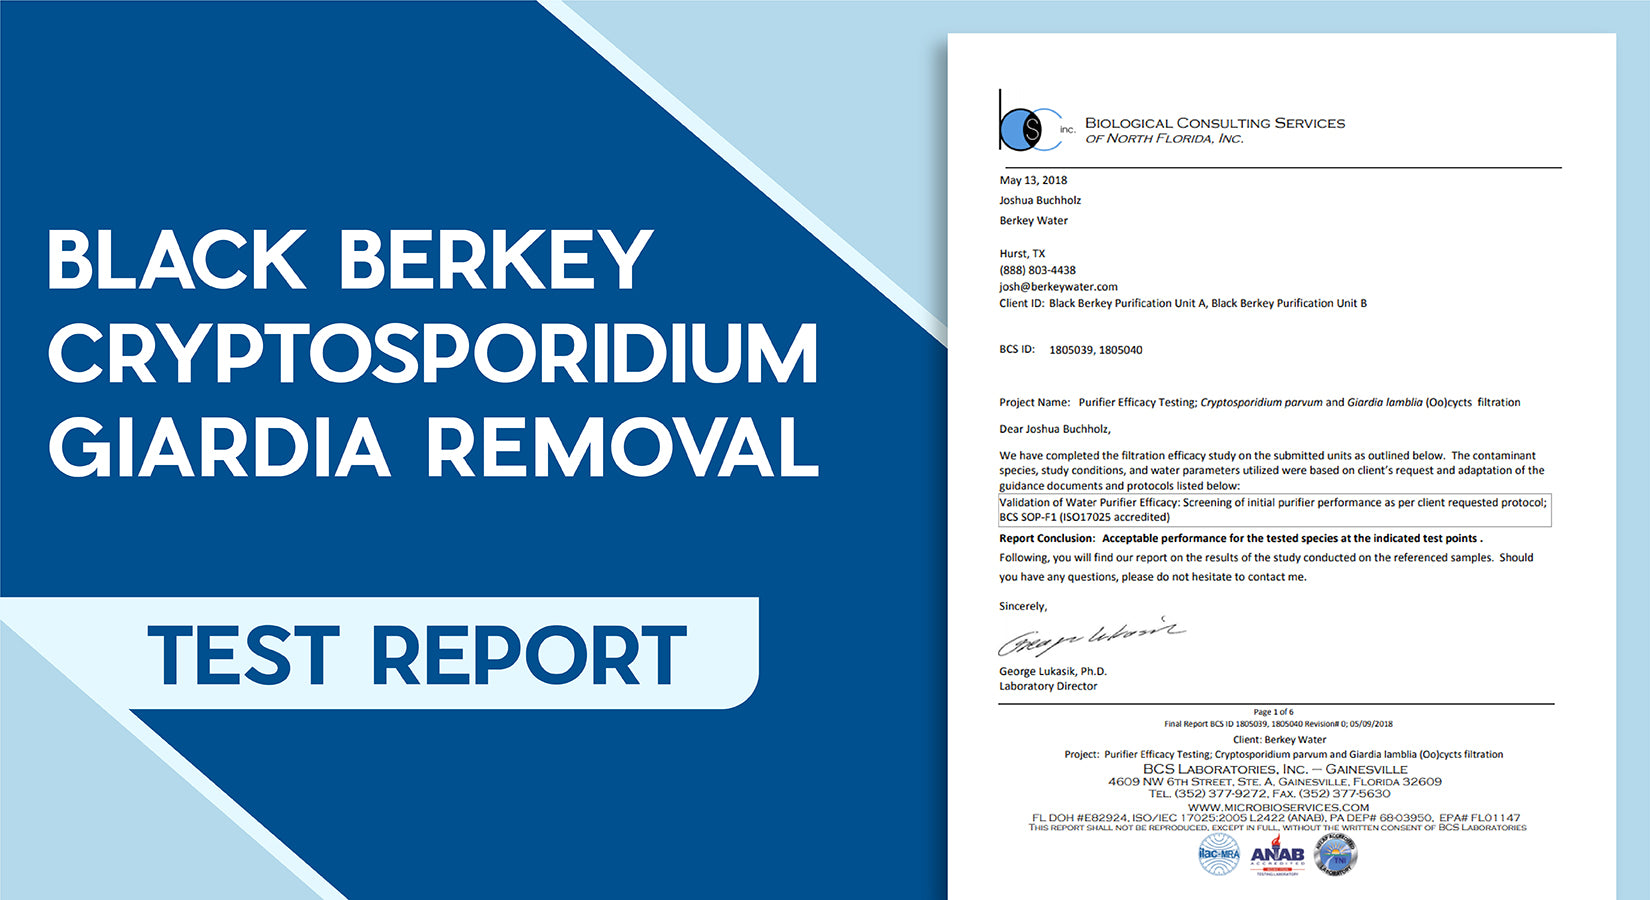 Black Berkey Cryptosporidium Giardia Removal Test Report